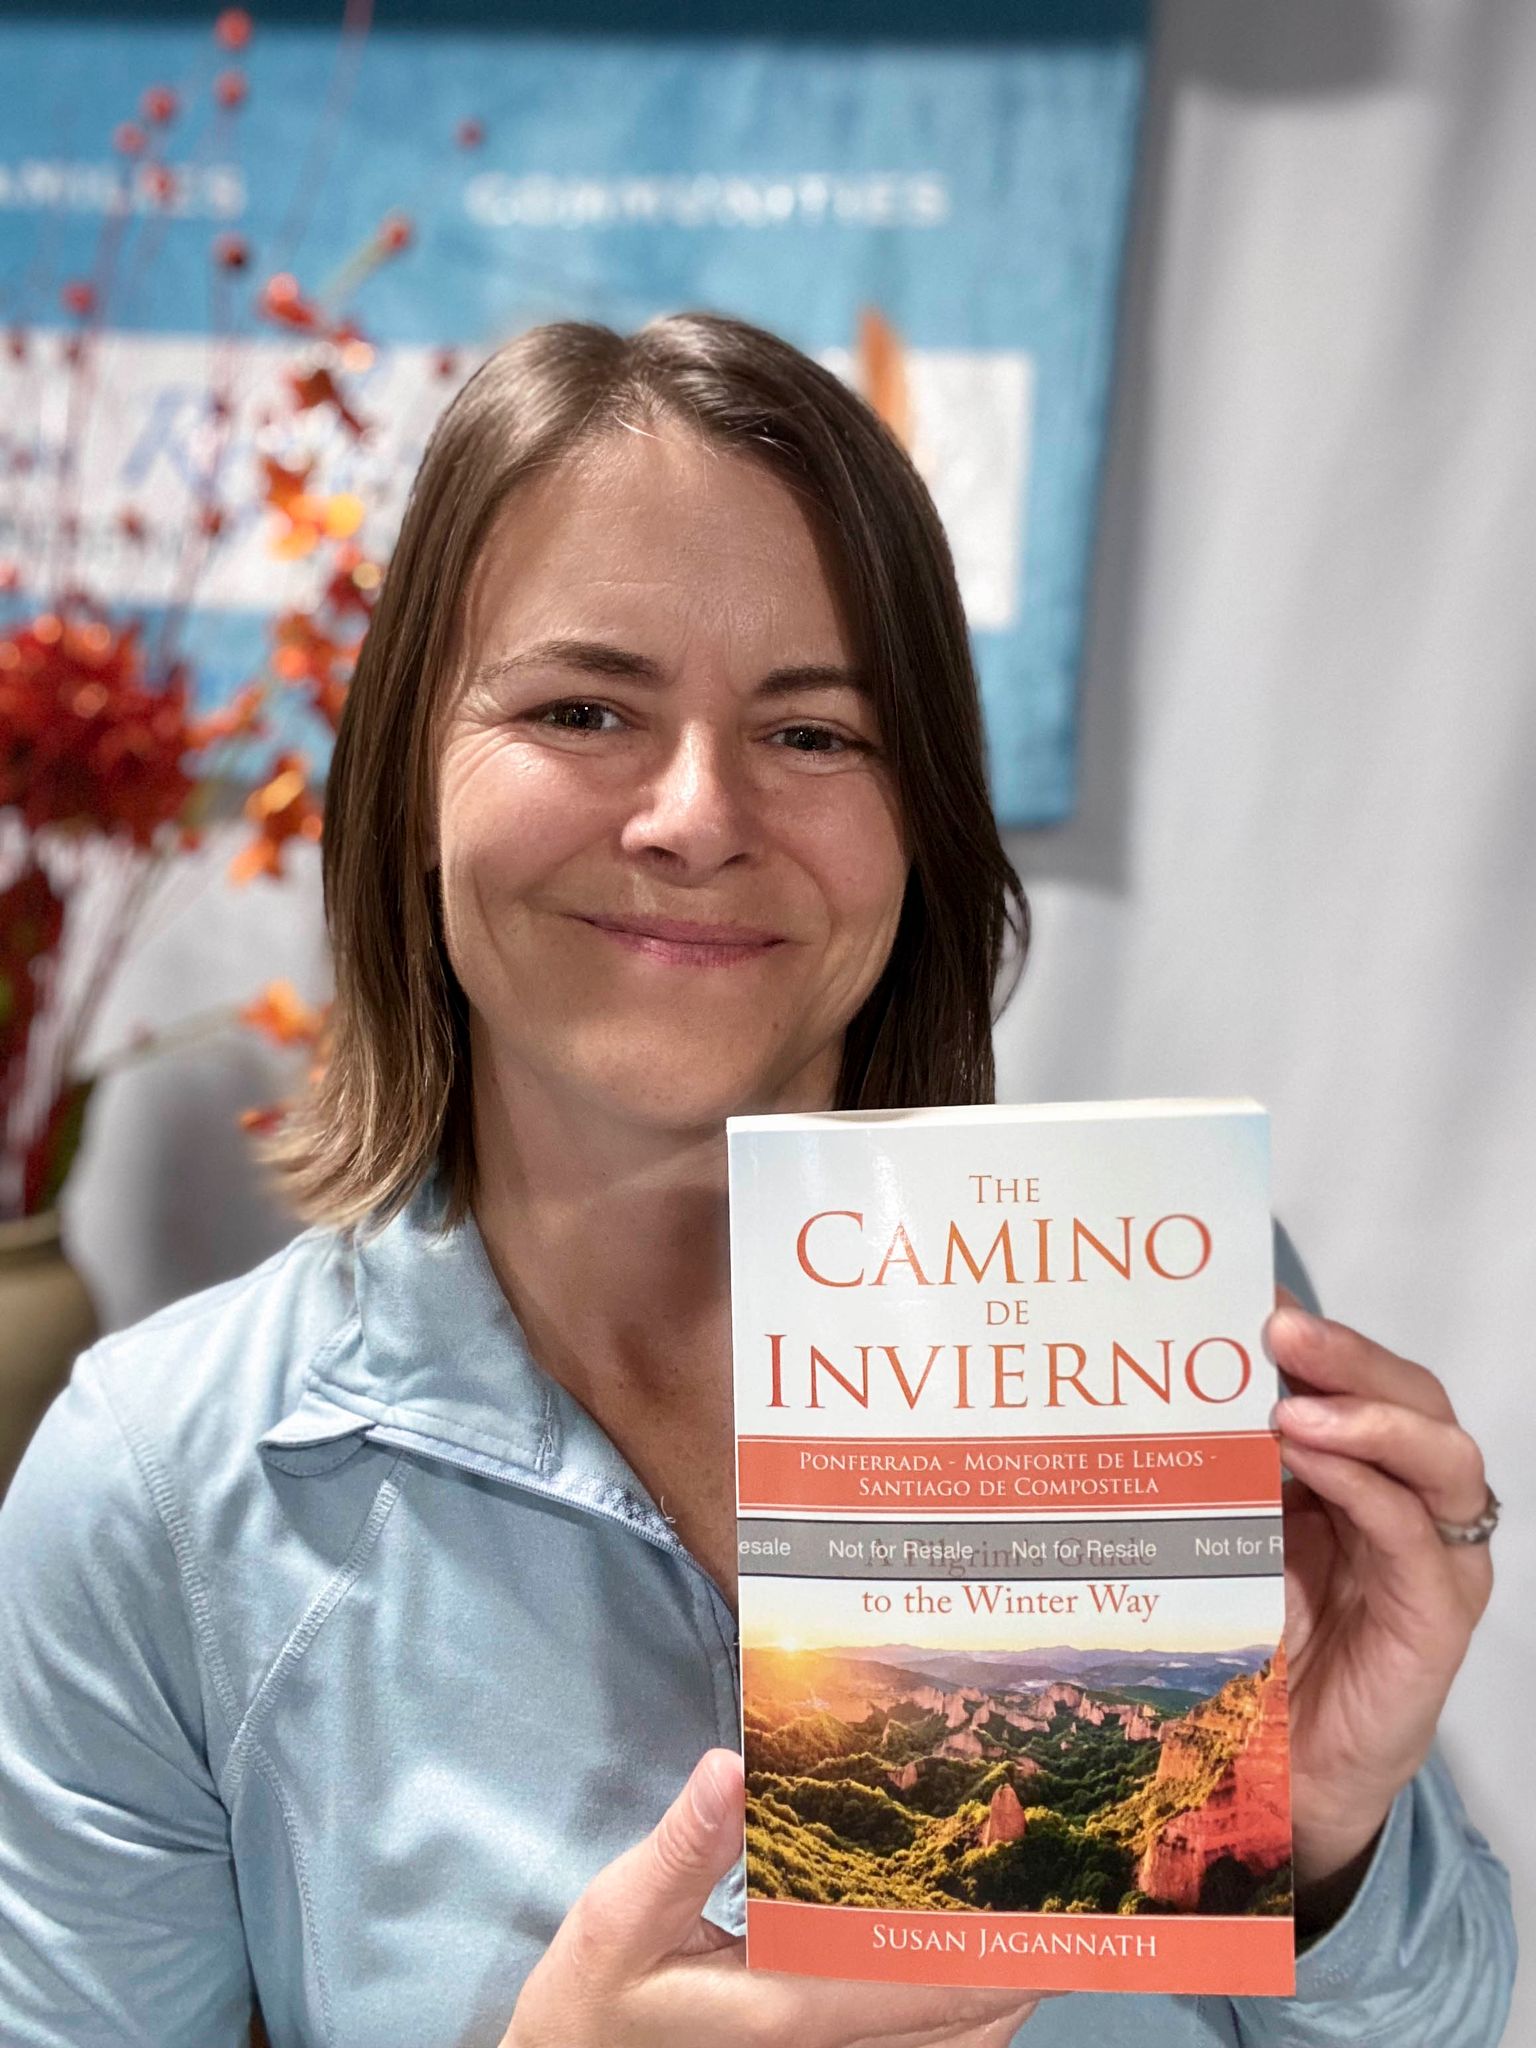 The Camino Invierno books